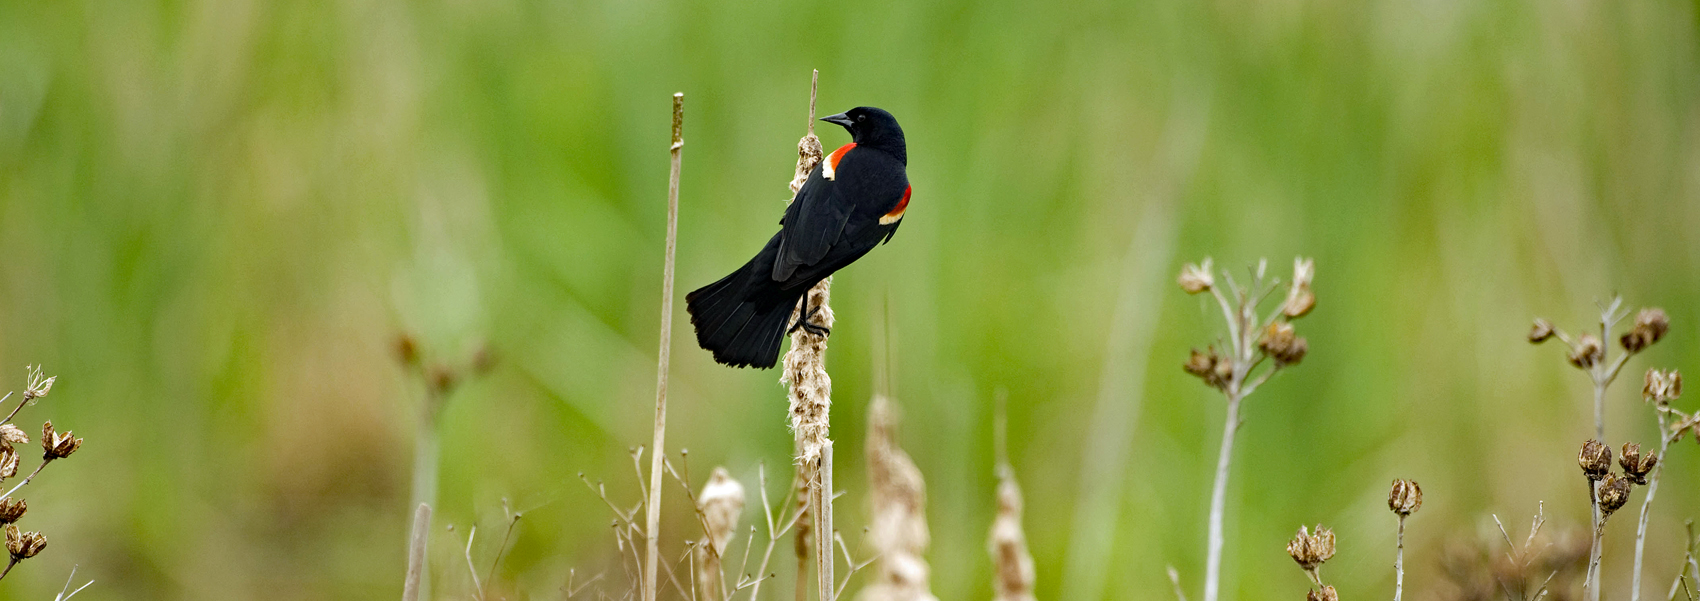 Redwing Blackbird in a meadow